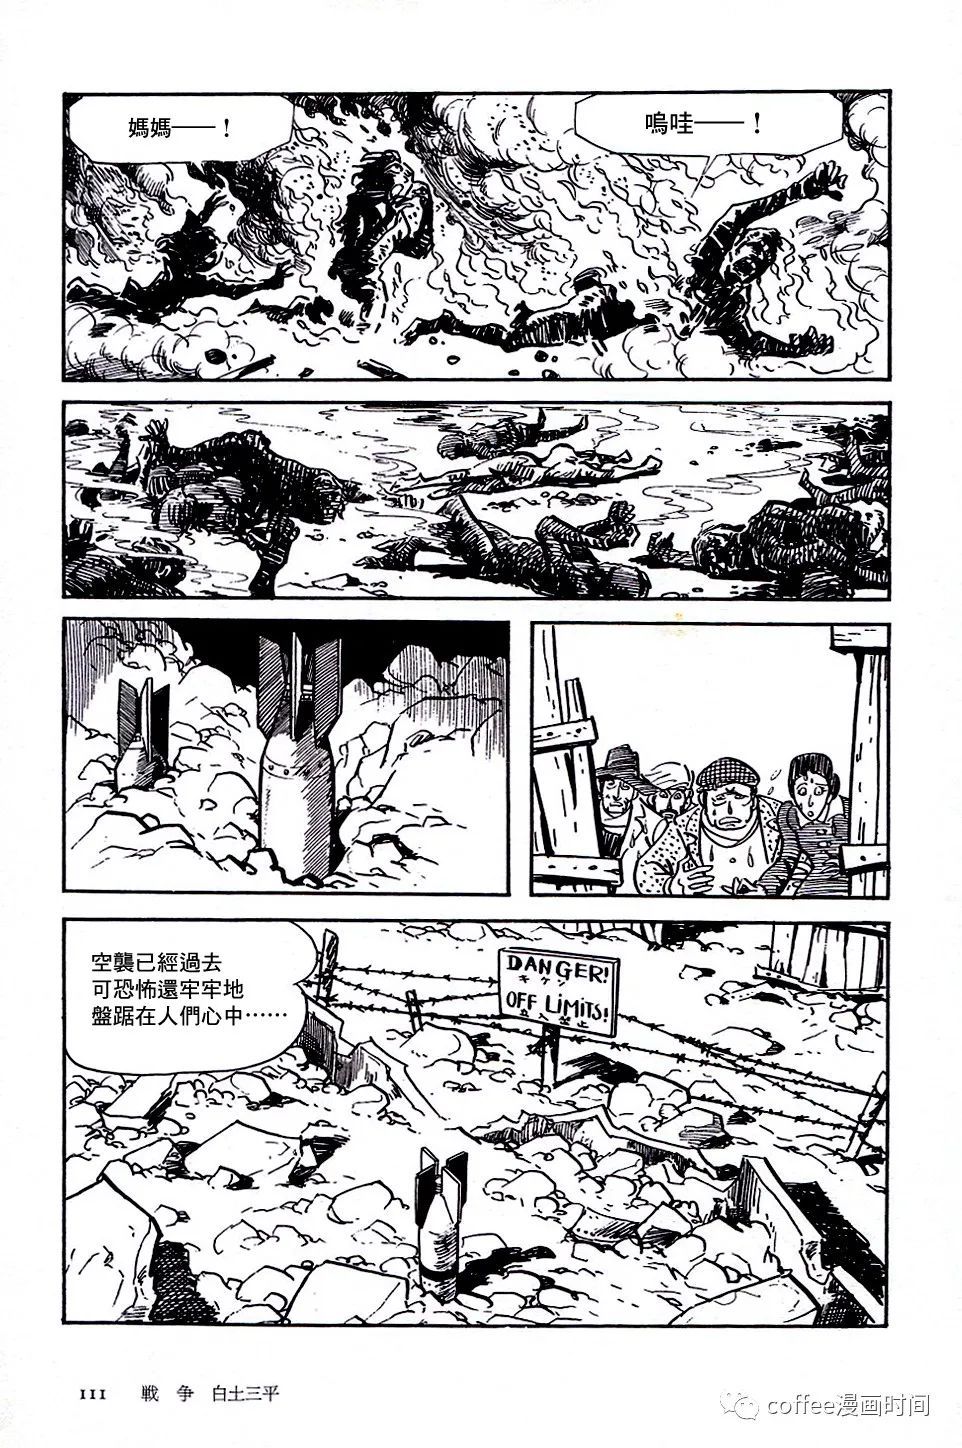 日本短篇漫畫傑作集 - 白土三平《戰爭》 - 1